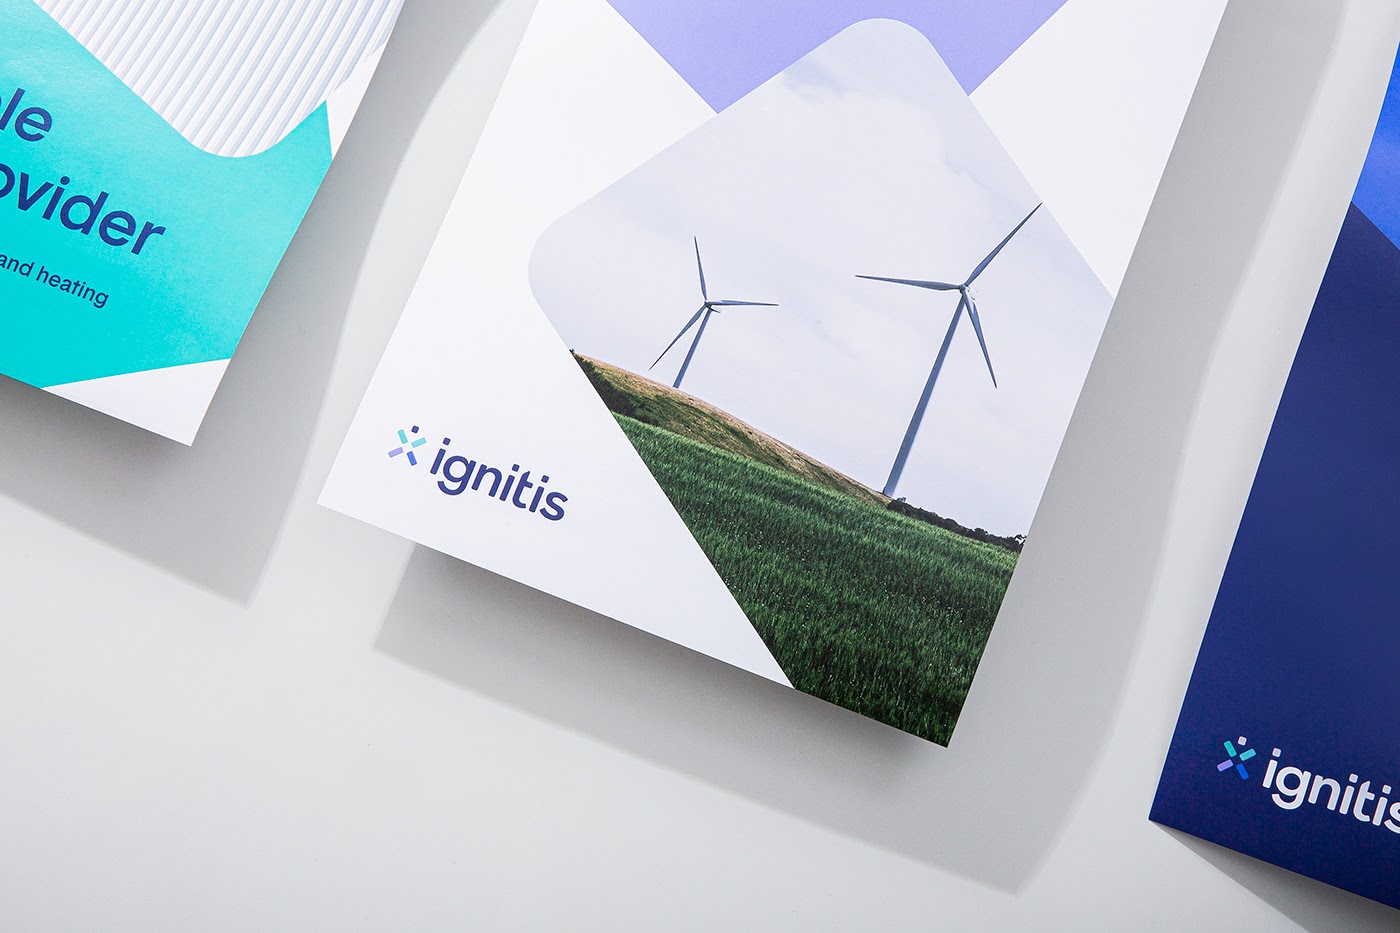 能源集团Ignitis品牌形象设计